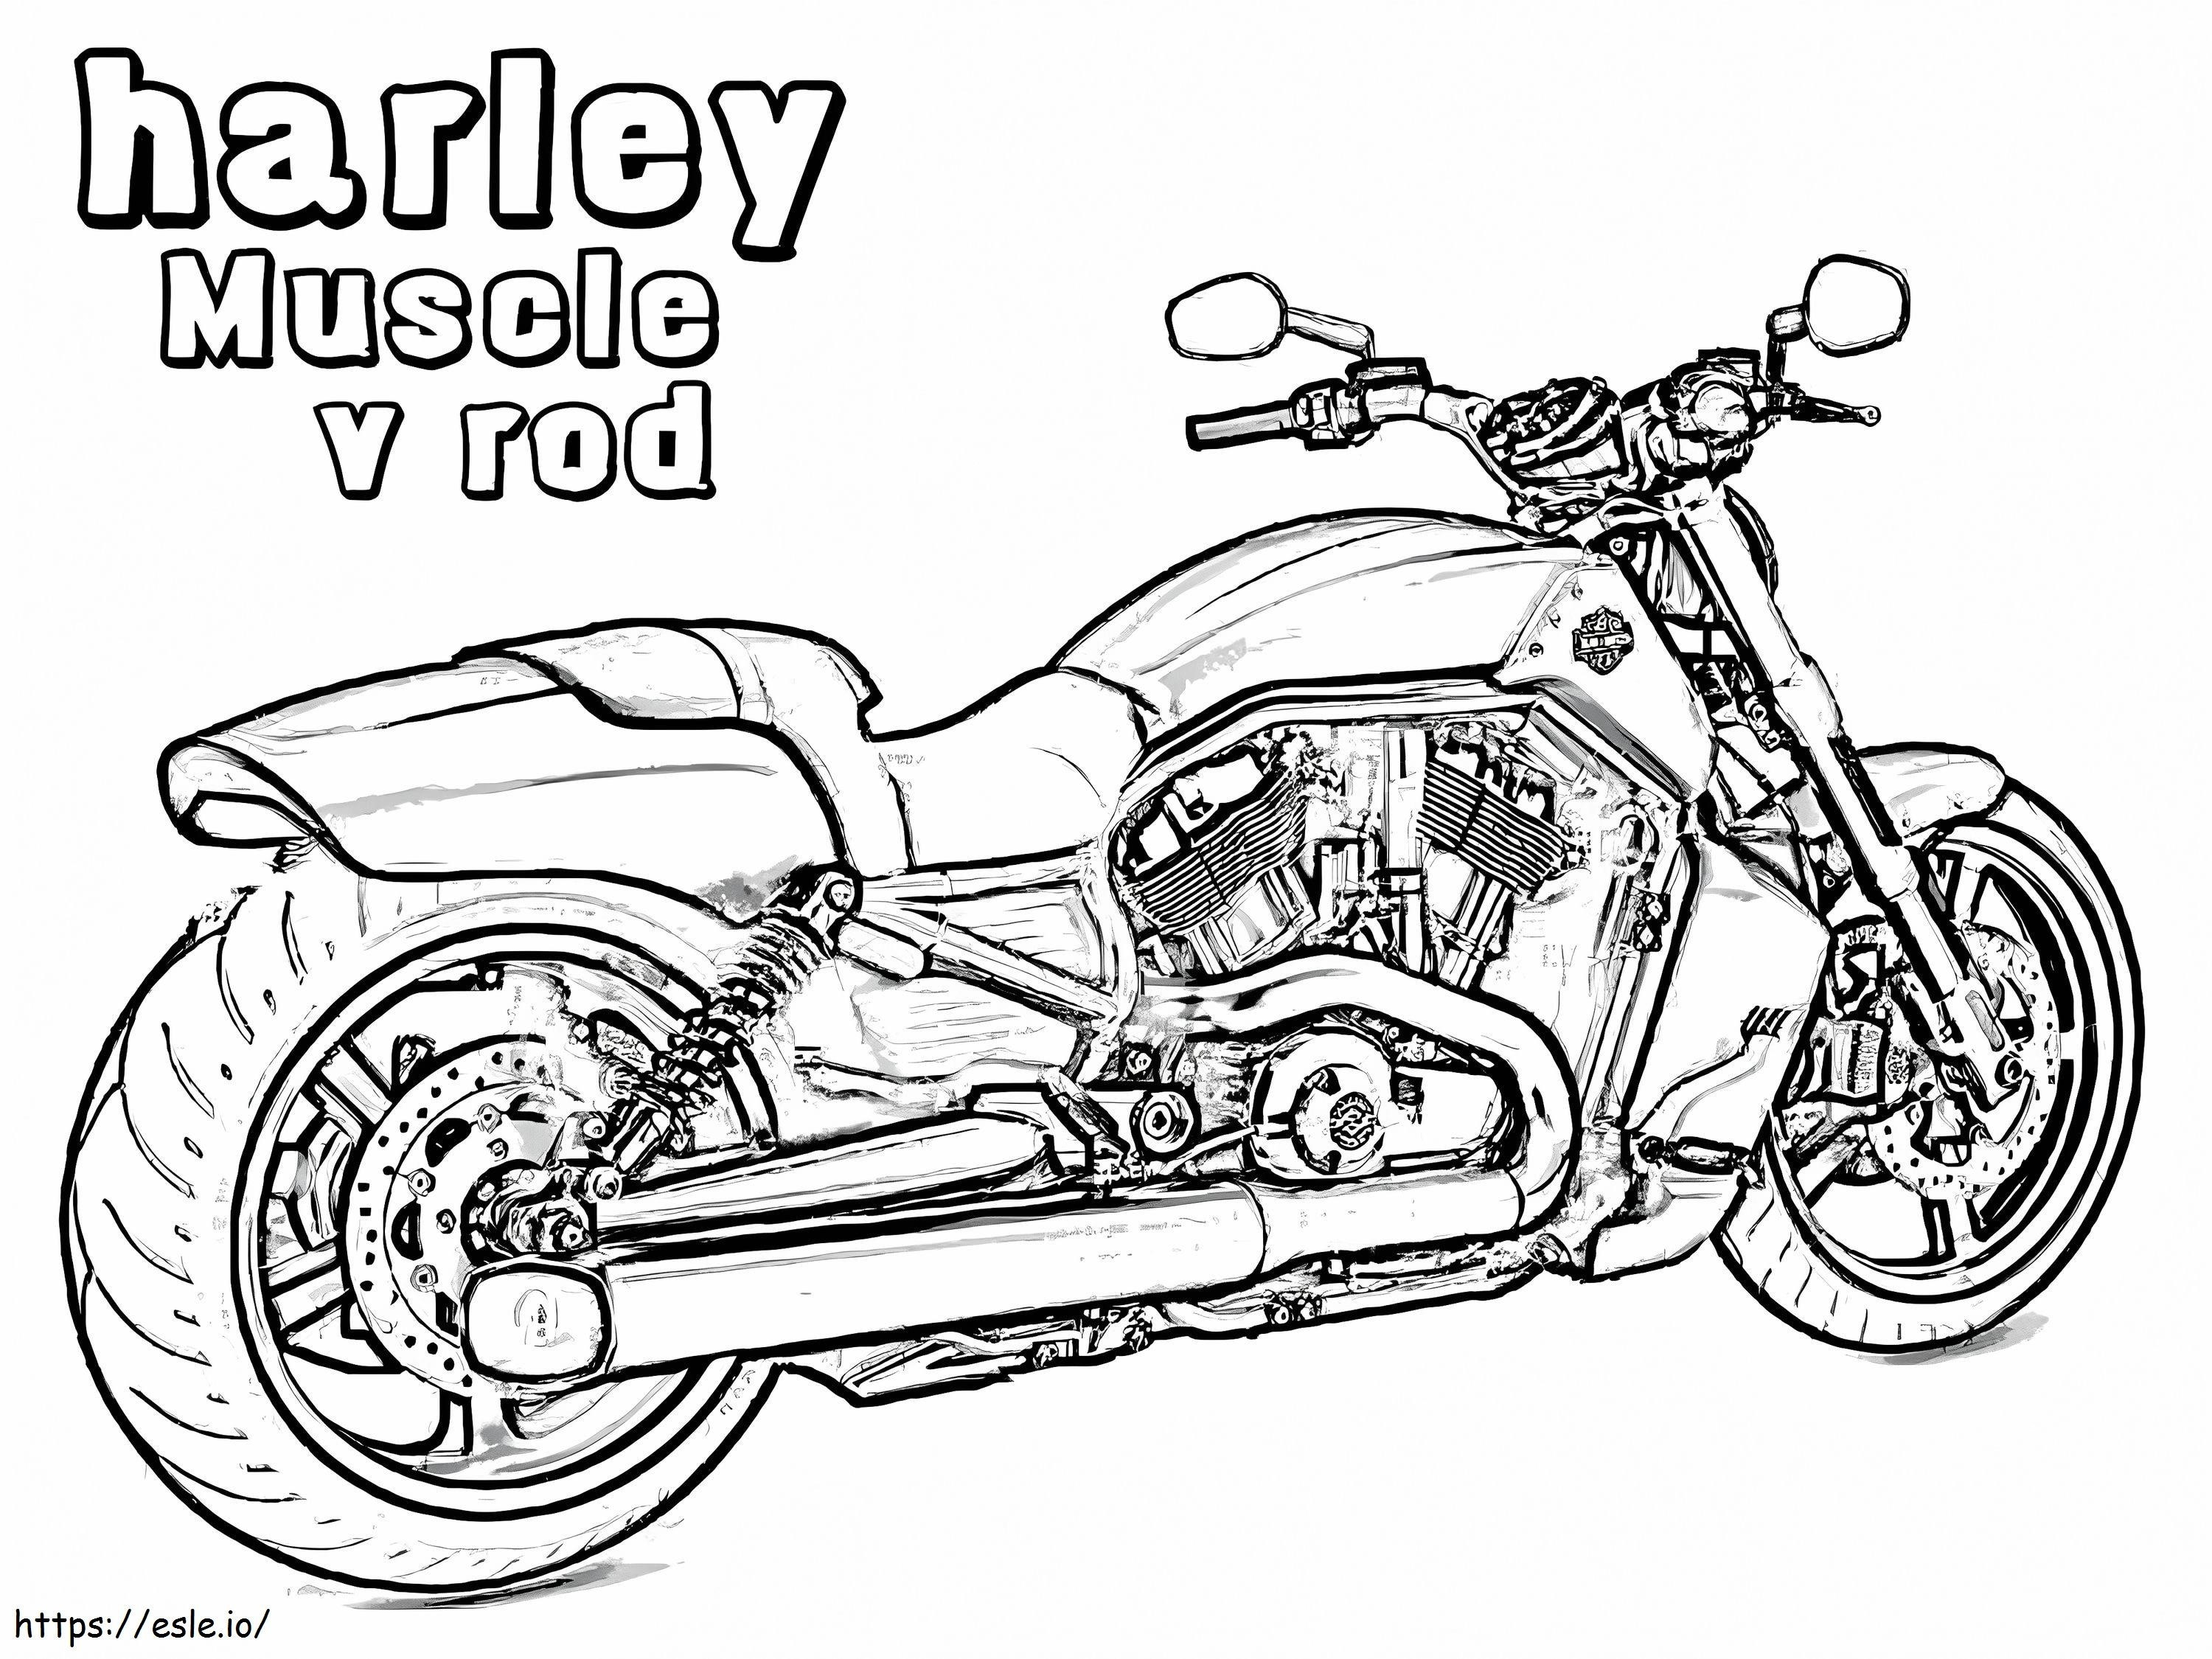 Harley Davidson de imprimat de colorat